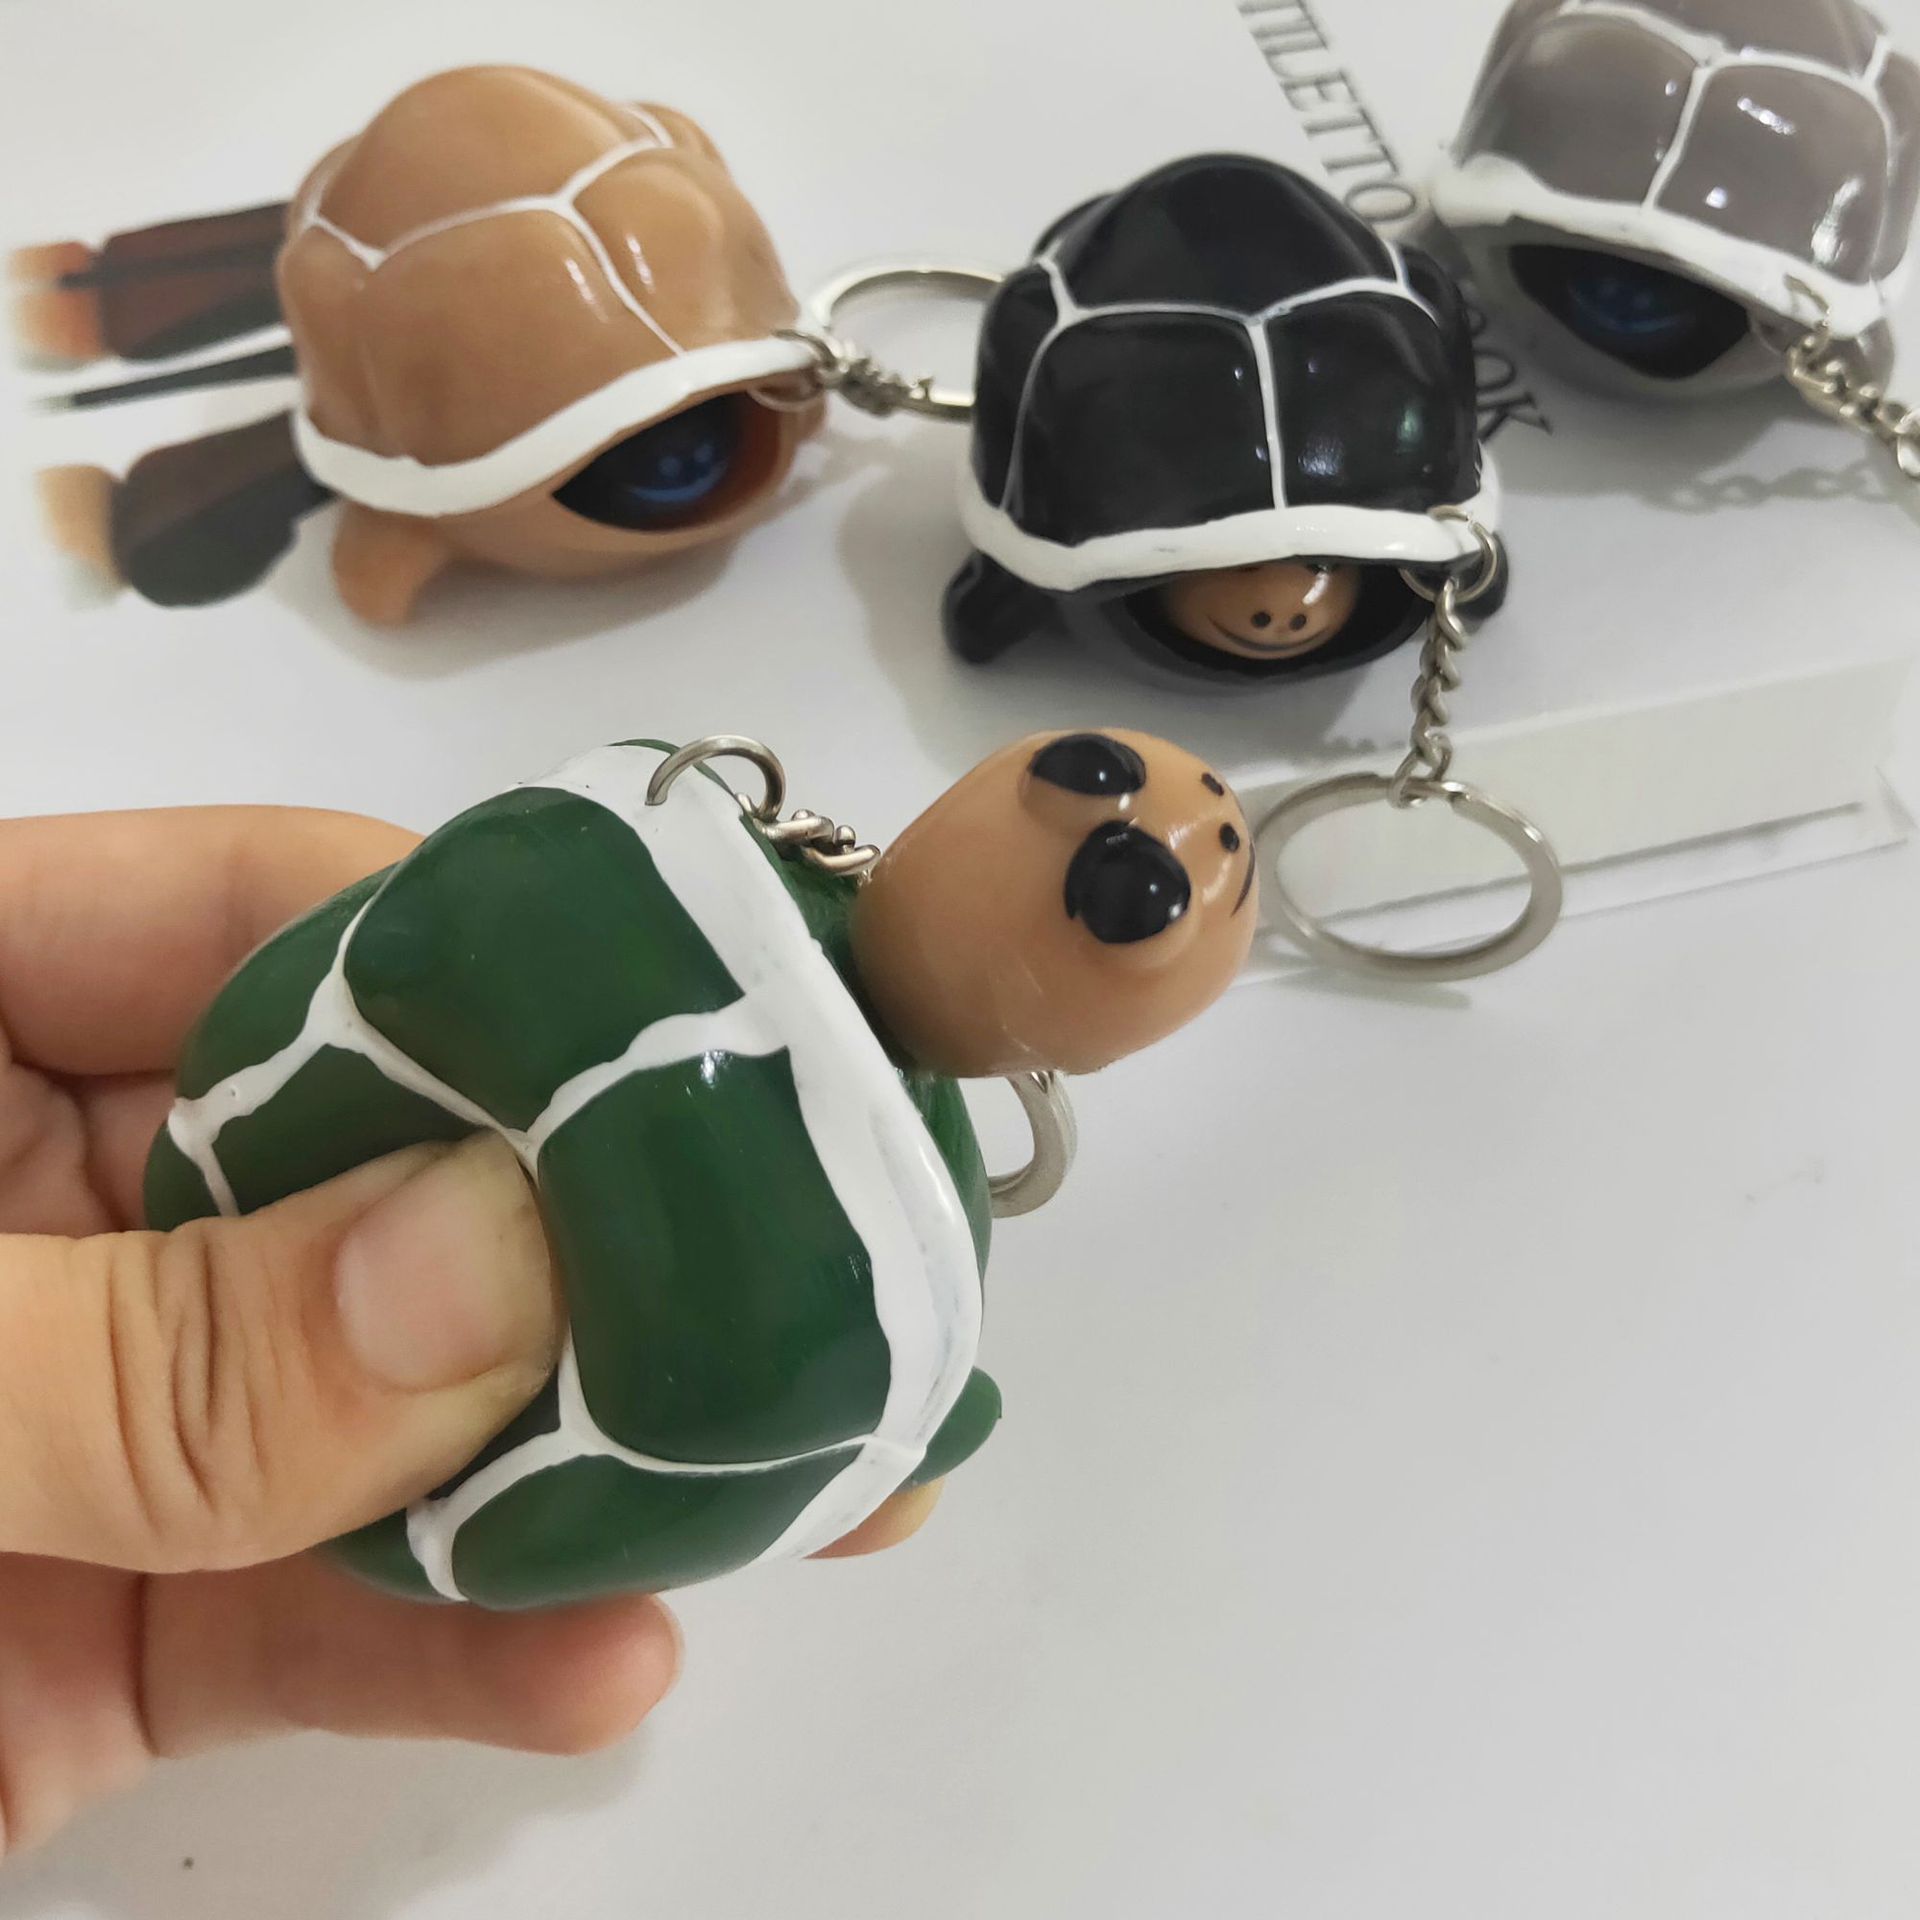 縮頭烏龜捏捏樂 可愛烏龜造型療癒玩具 創意吊飾小玩具